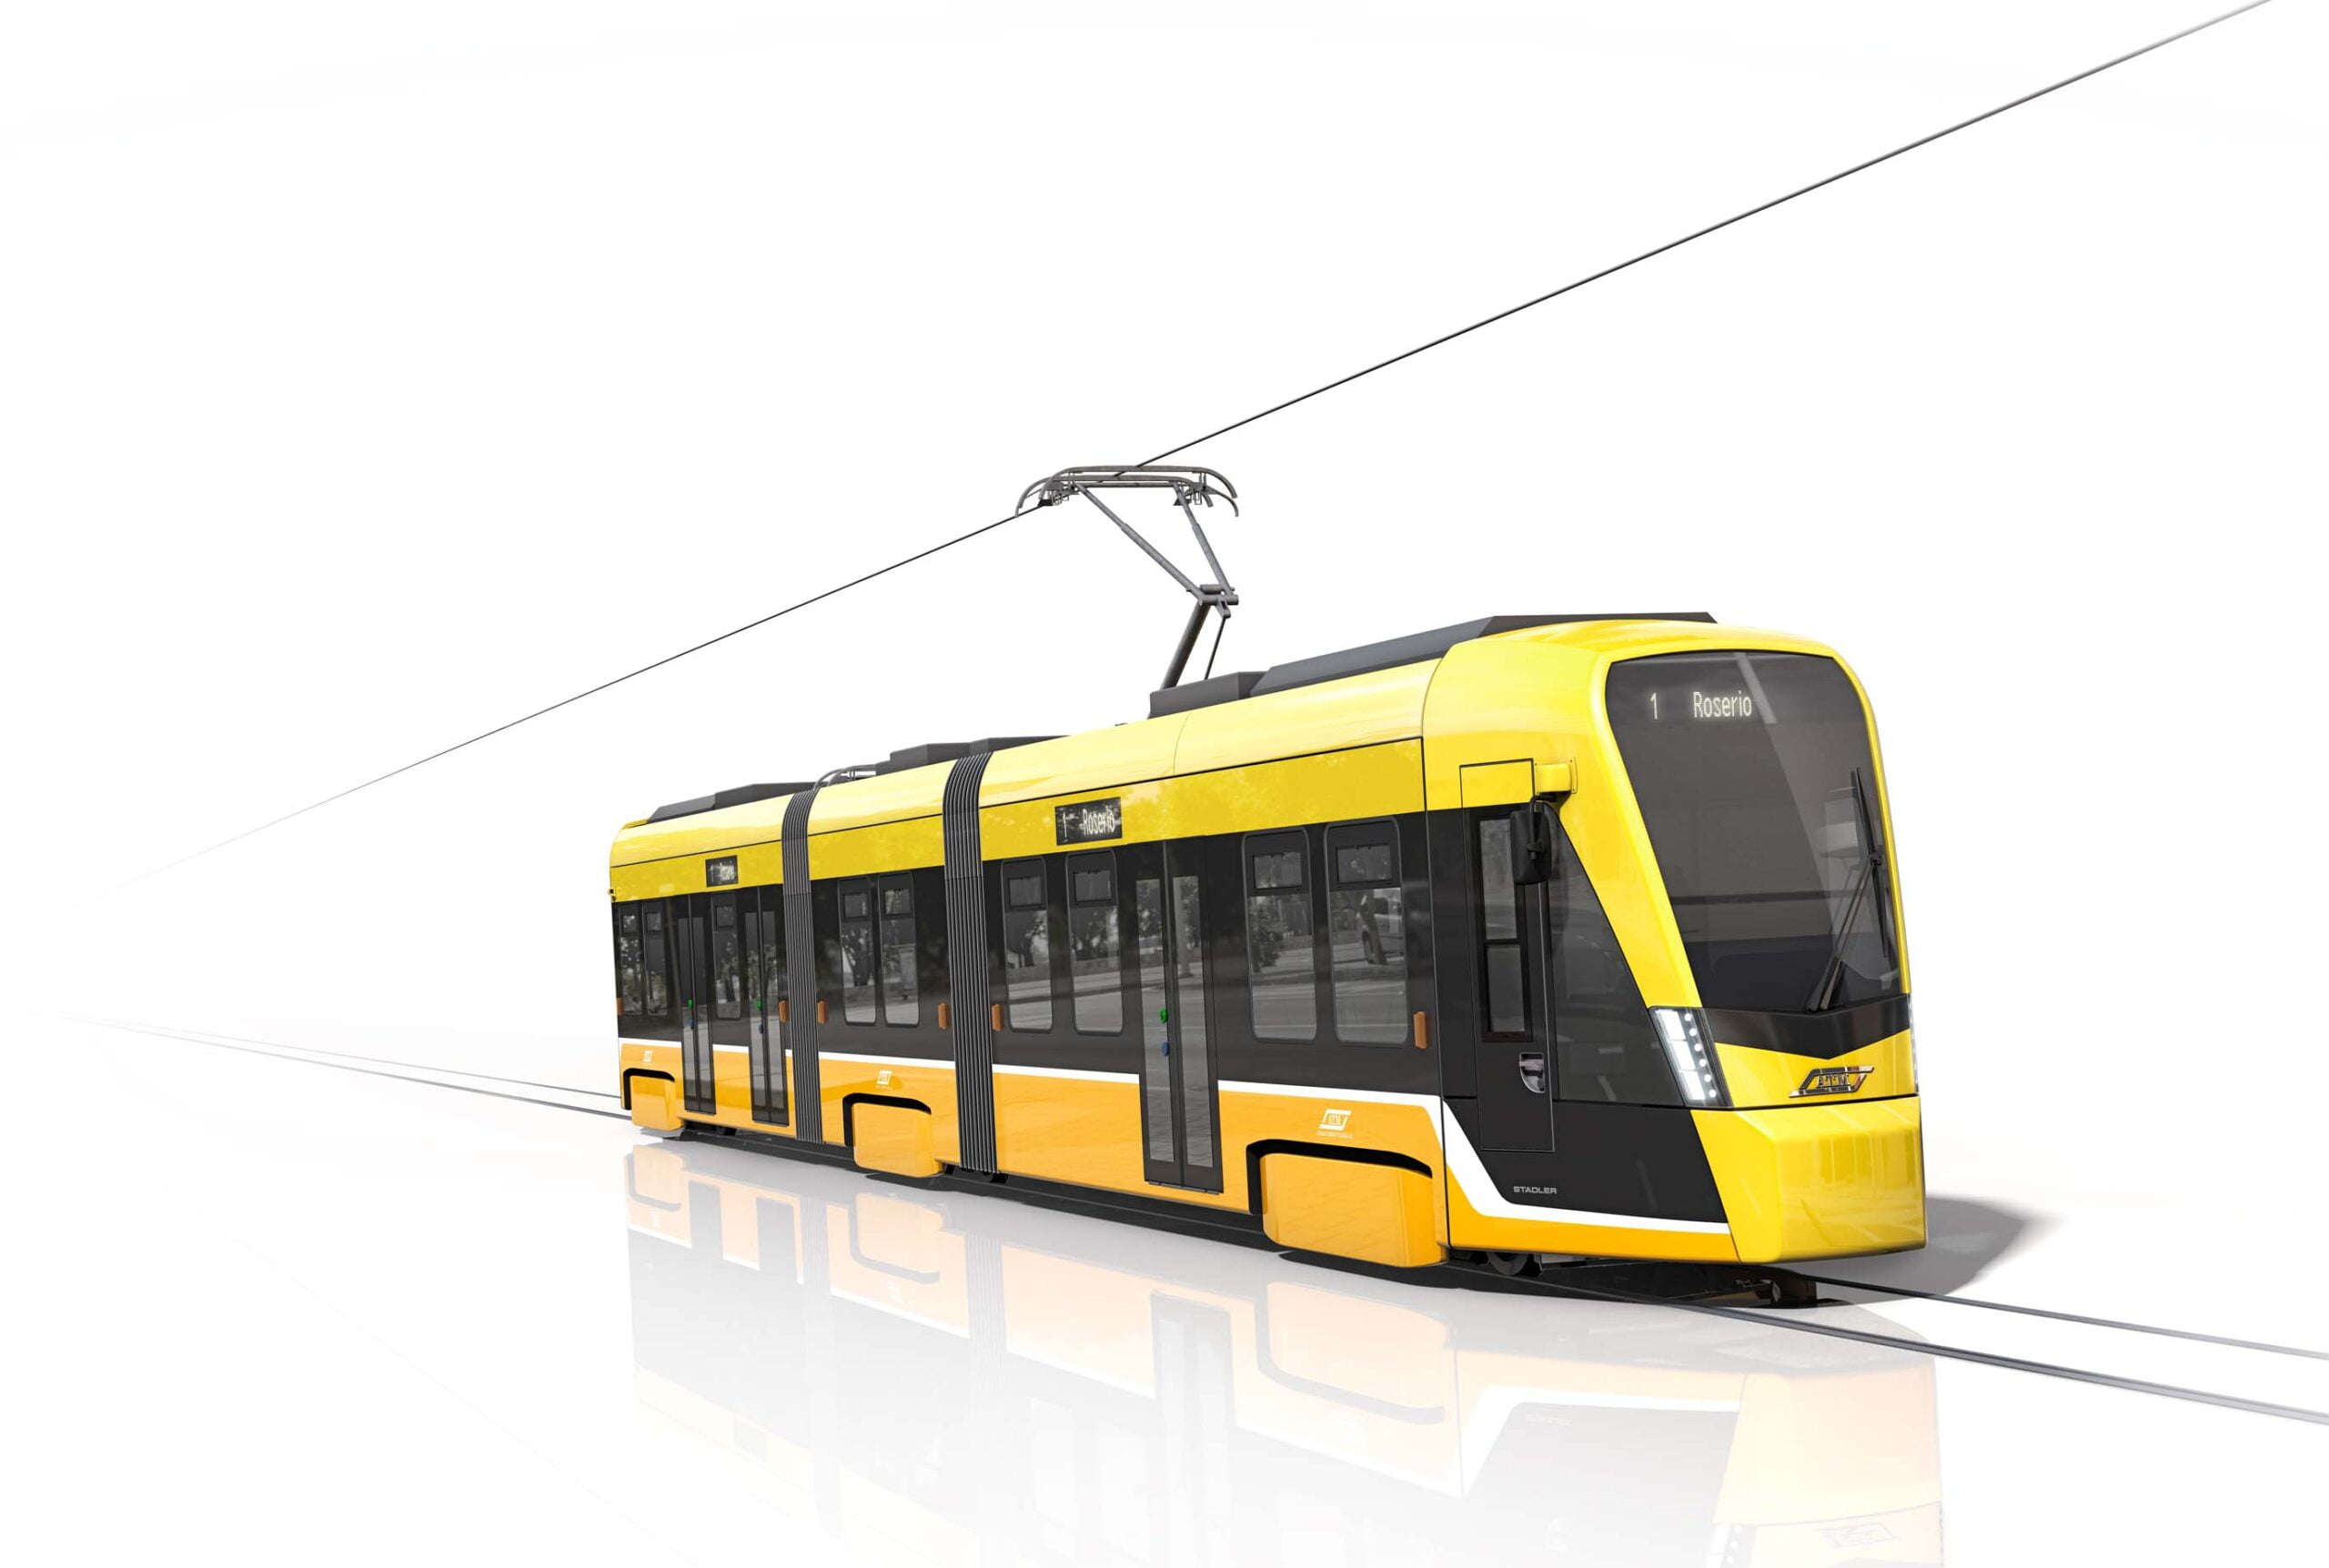 Stadler suministrará 80 tranvías para la ciudad de Milán por 172,6 millones